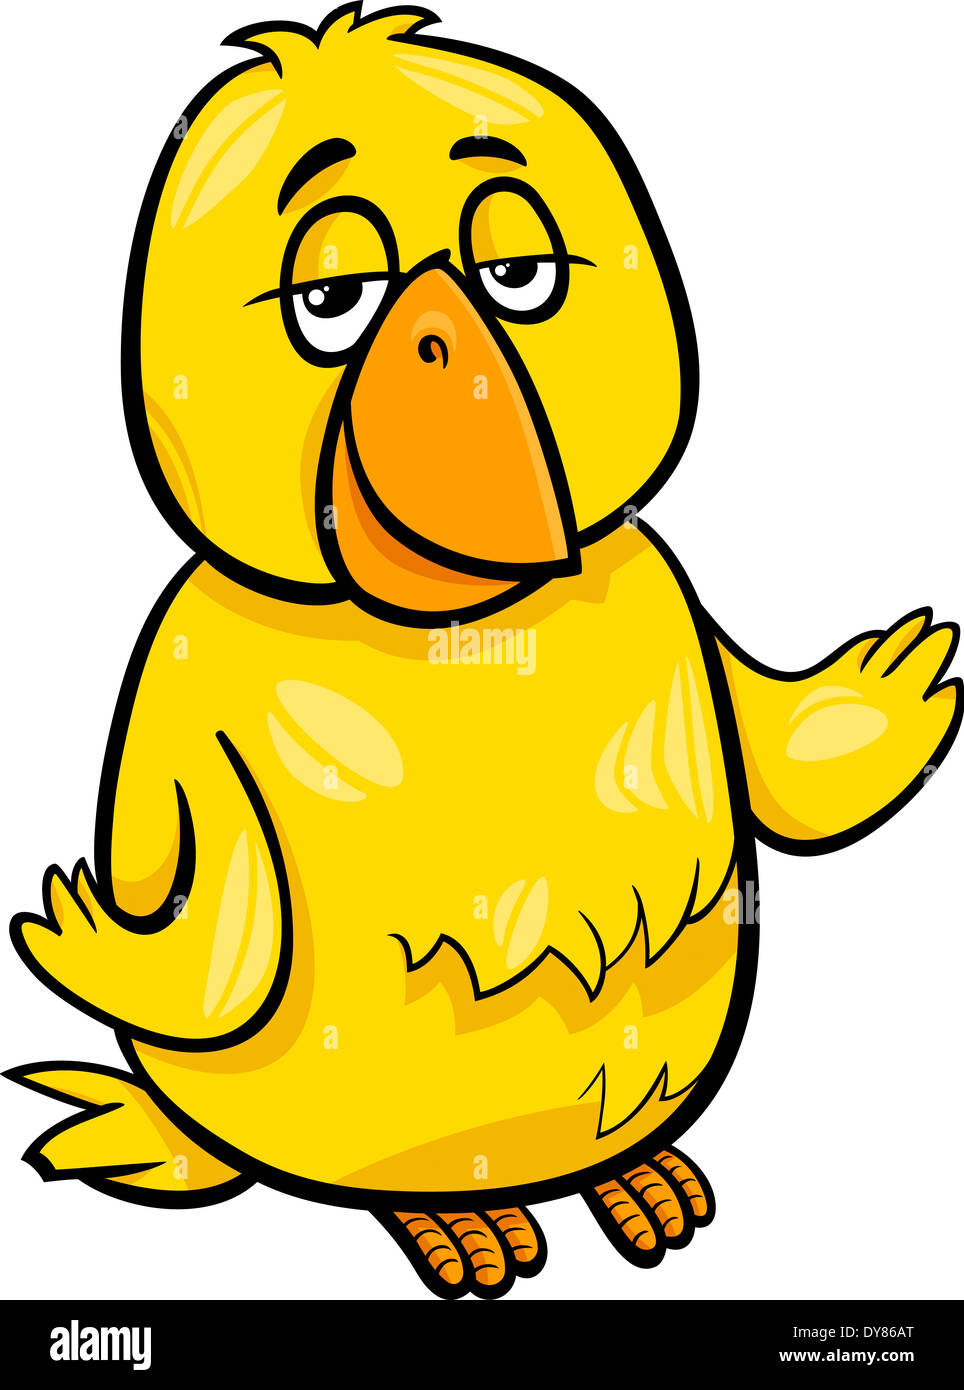 Cartoon Illustration of Funny Canary Bird Character Stock Photo